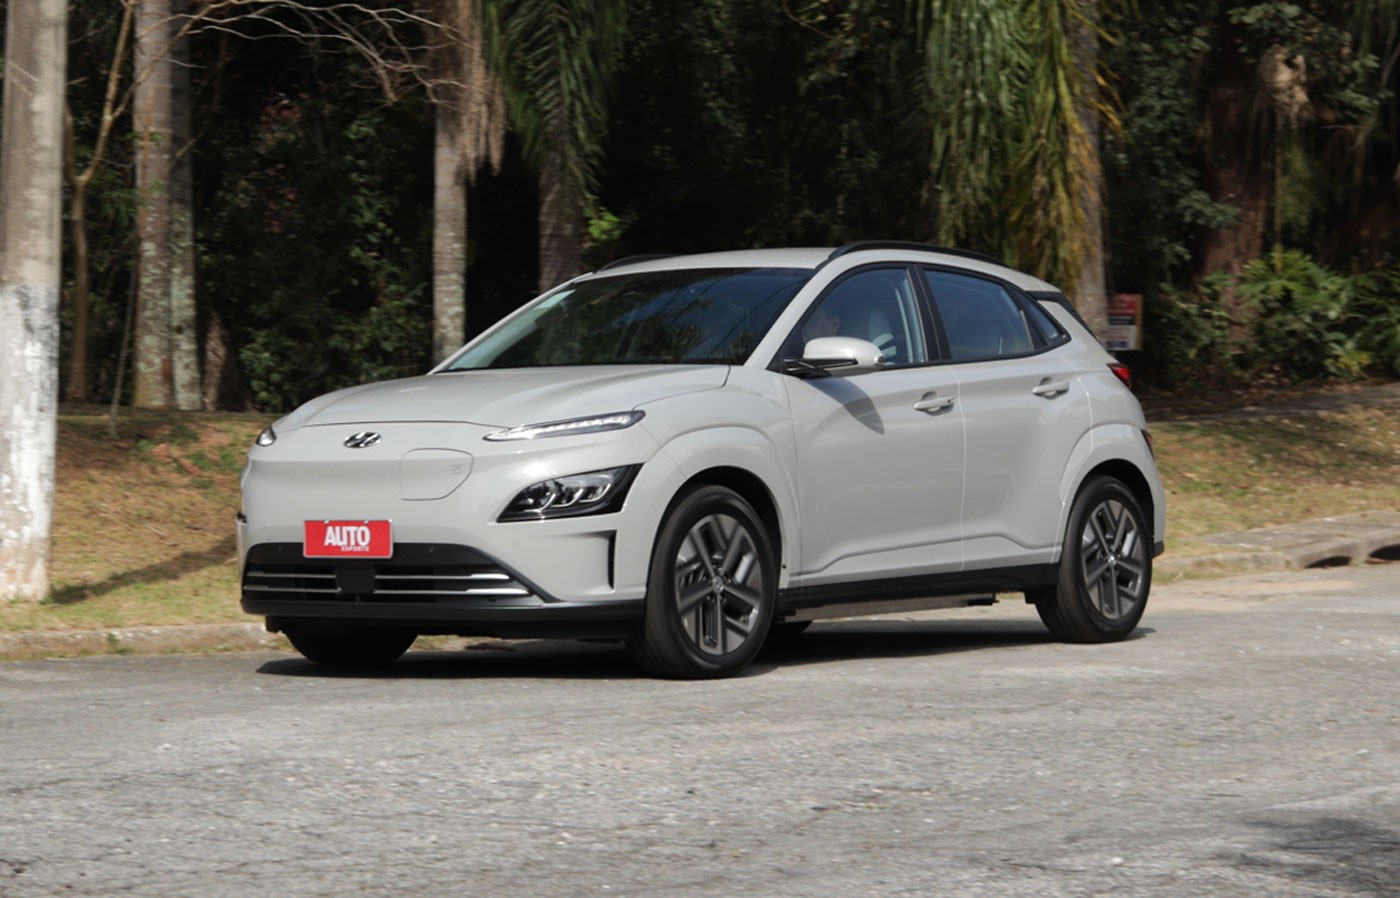 Hyundai Kona é o SUV elétrico ideal para quem não liga para novidades; veja o teste